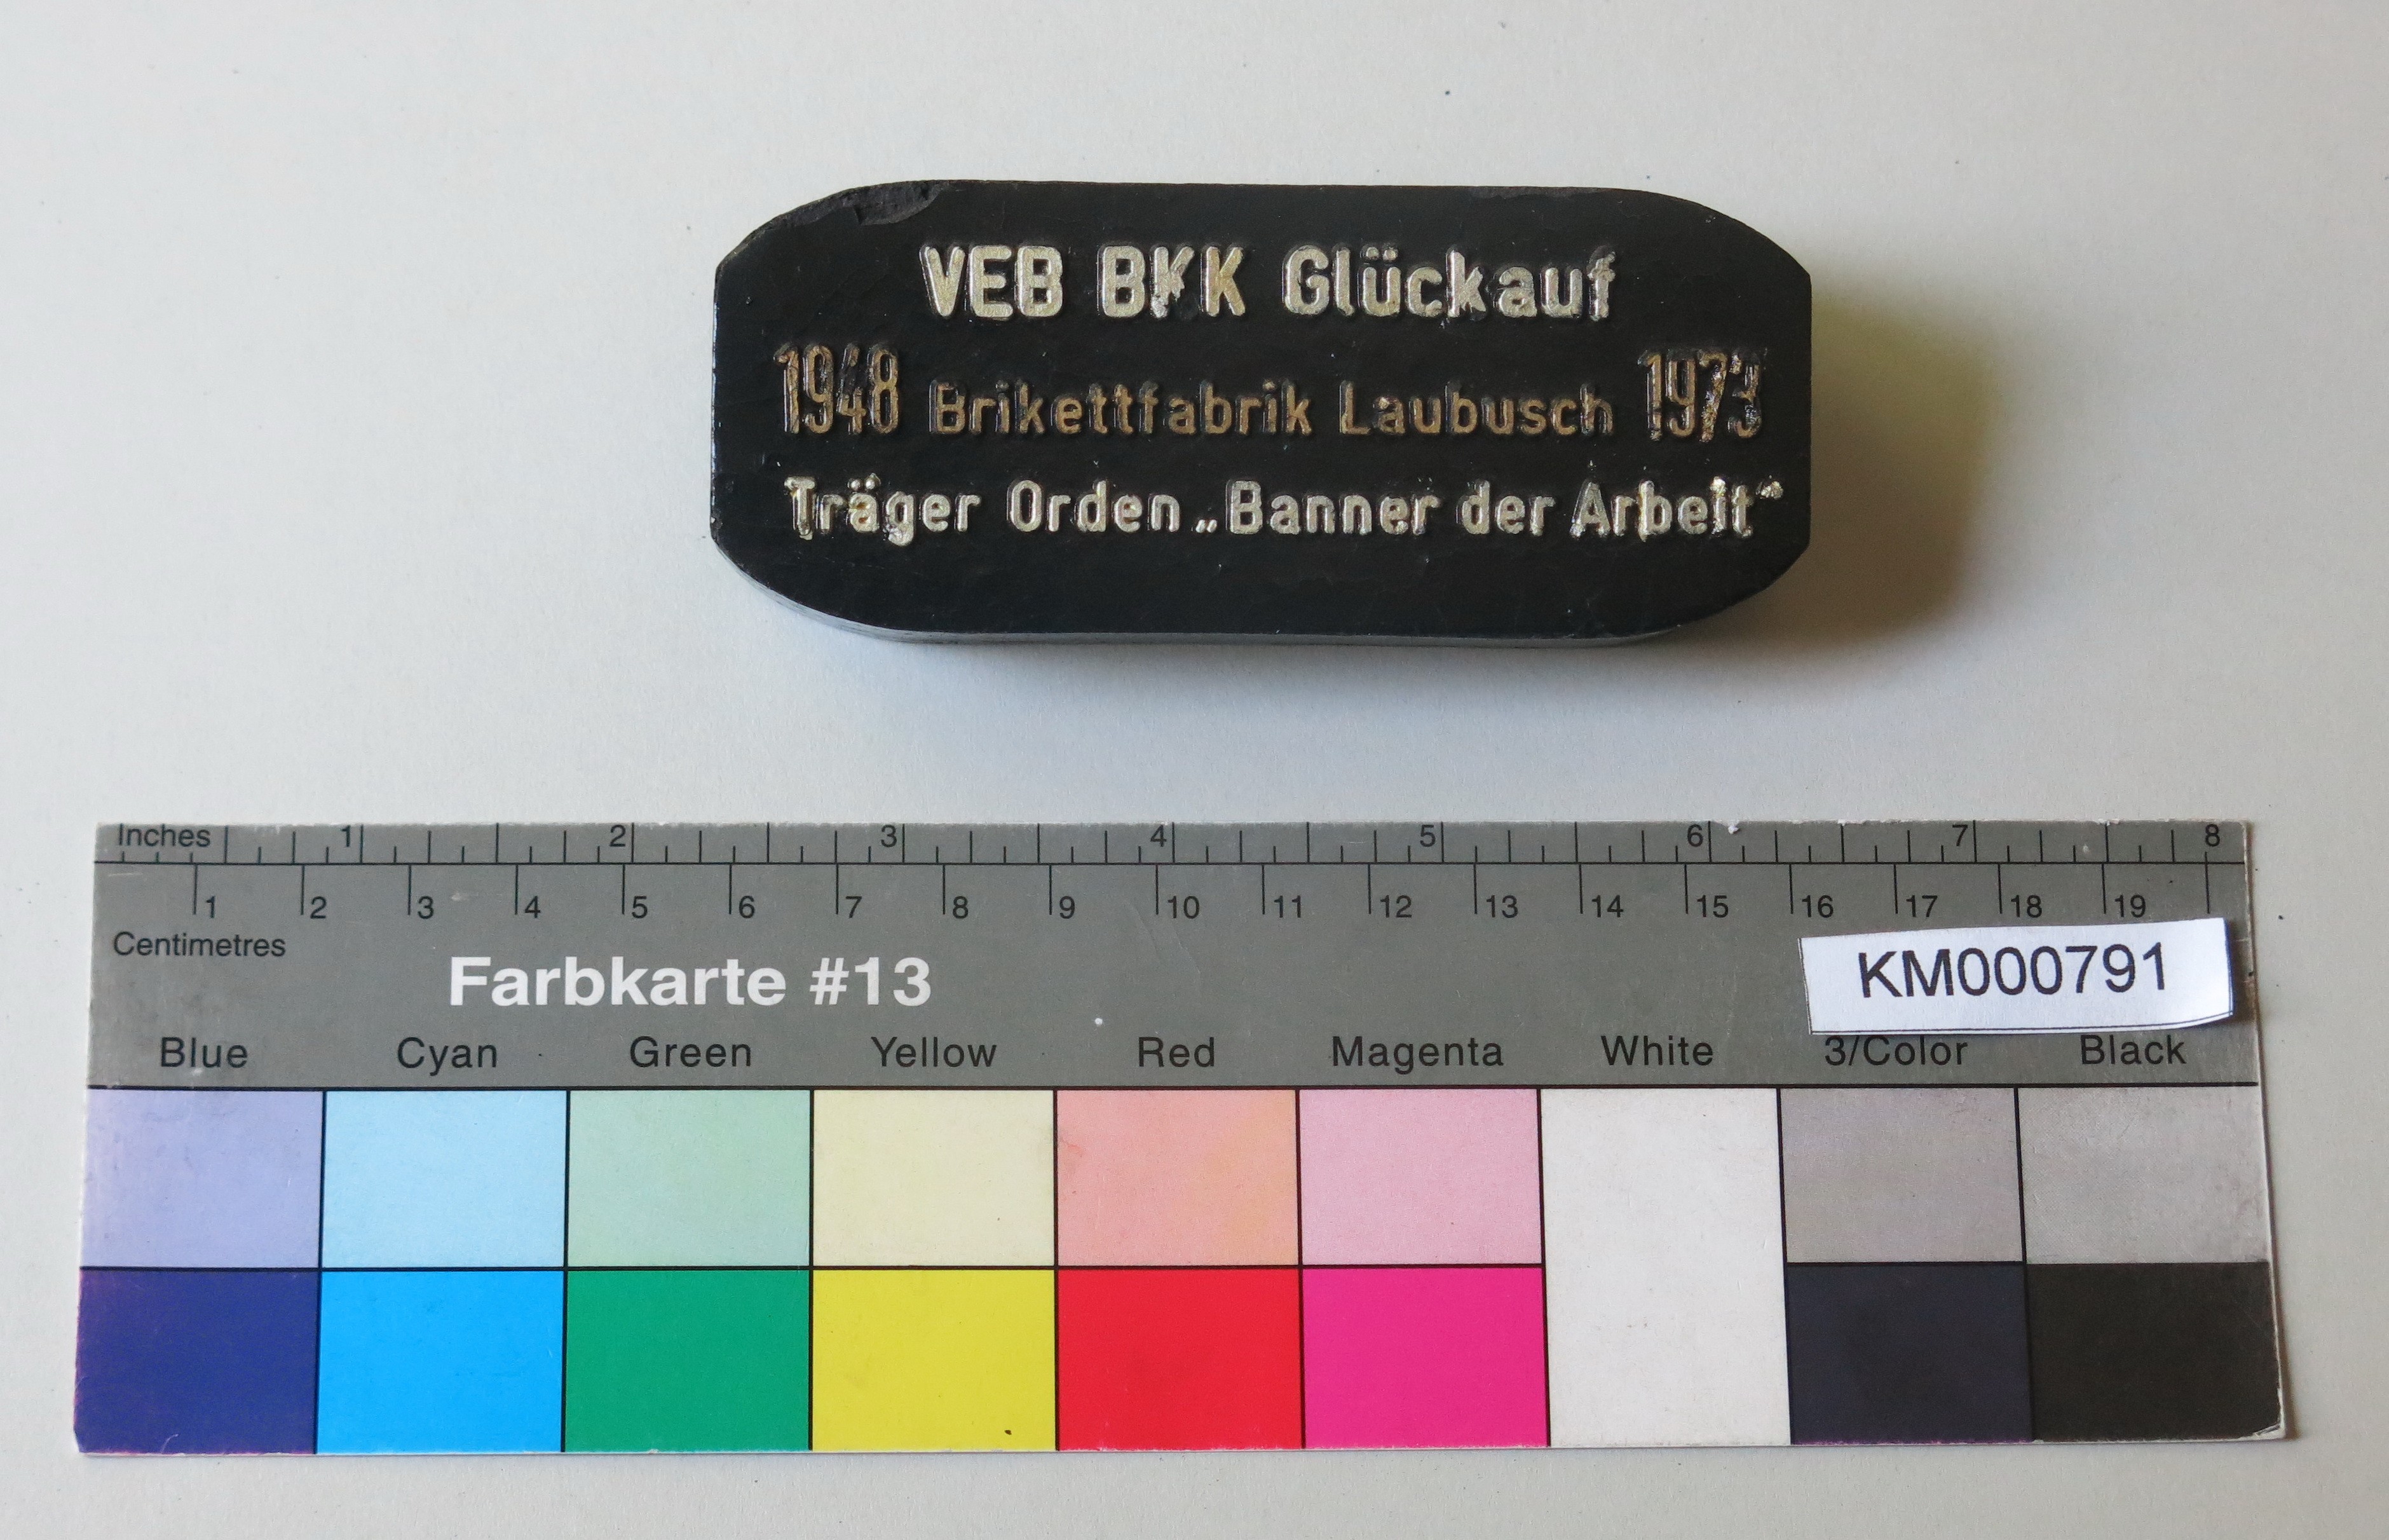 Zierbrikett "VEB BKK Glückauf 1948 Brikettfabrik Laubusch 1973 Träger Orden 'Banner der Arbeit' " (Energiefabrik Knappenrode CC BY-SA)